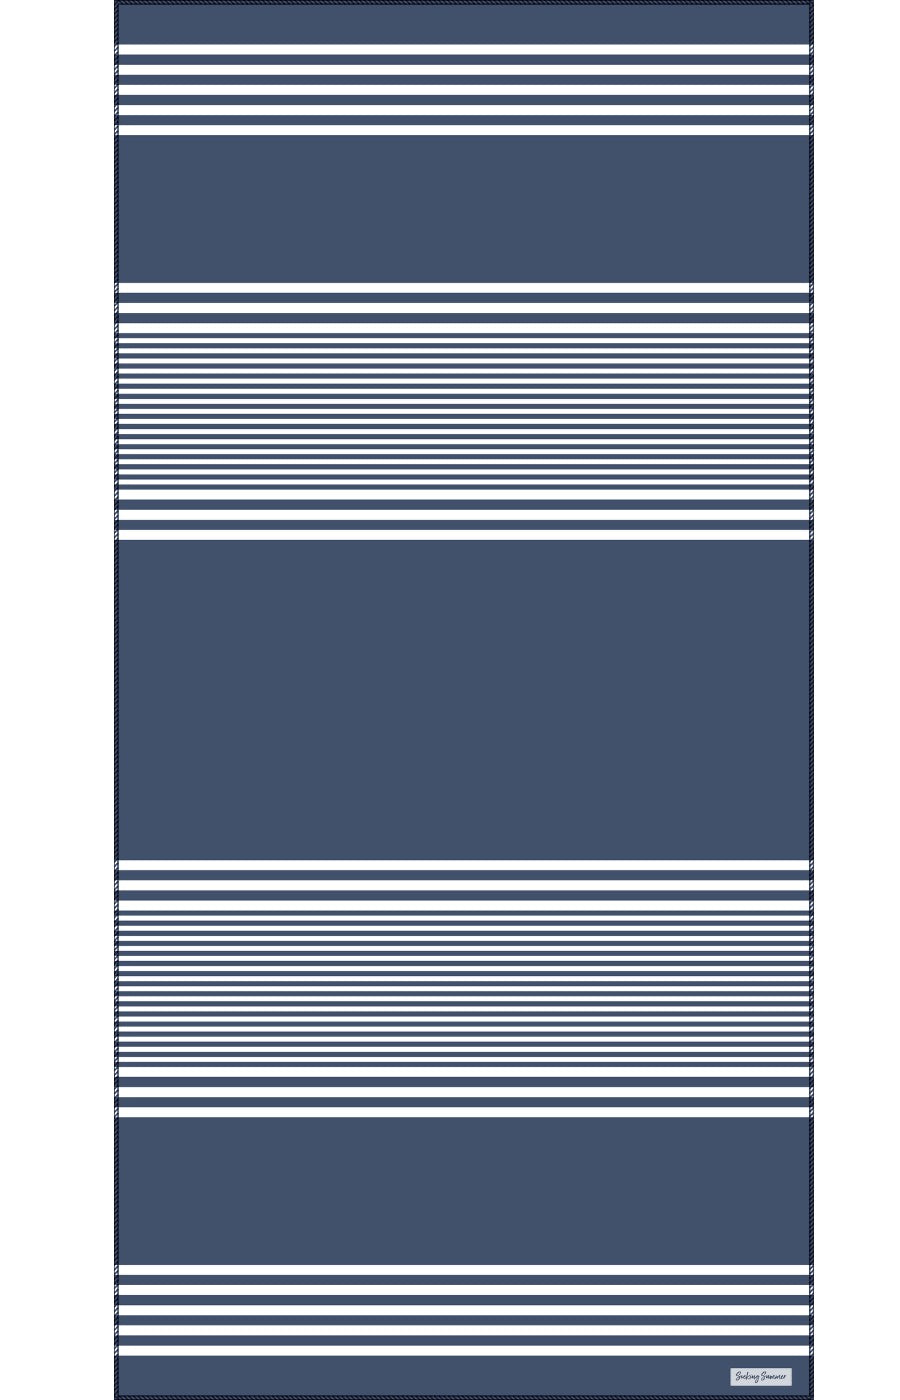 Classic Stripe in Deep Blue